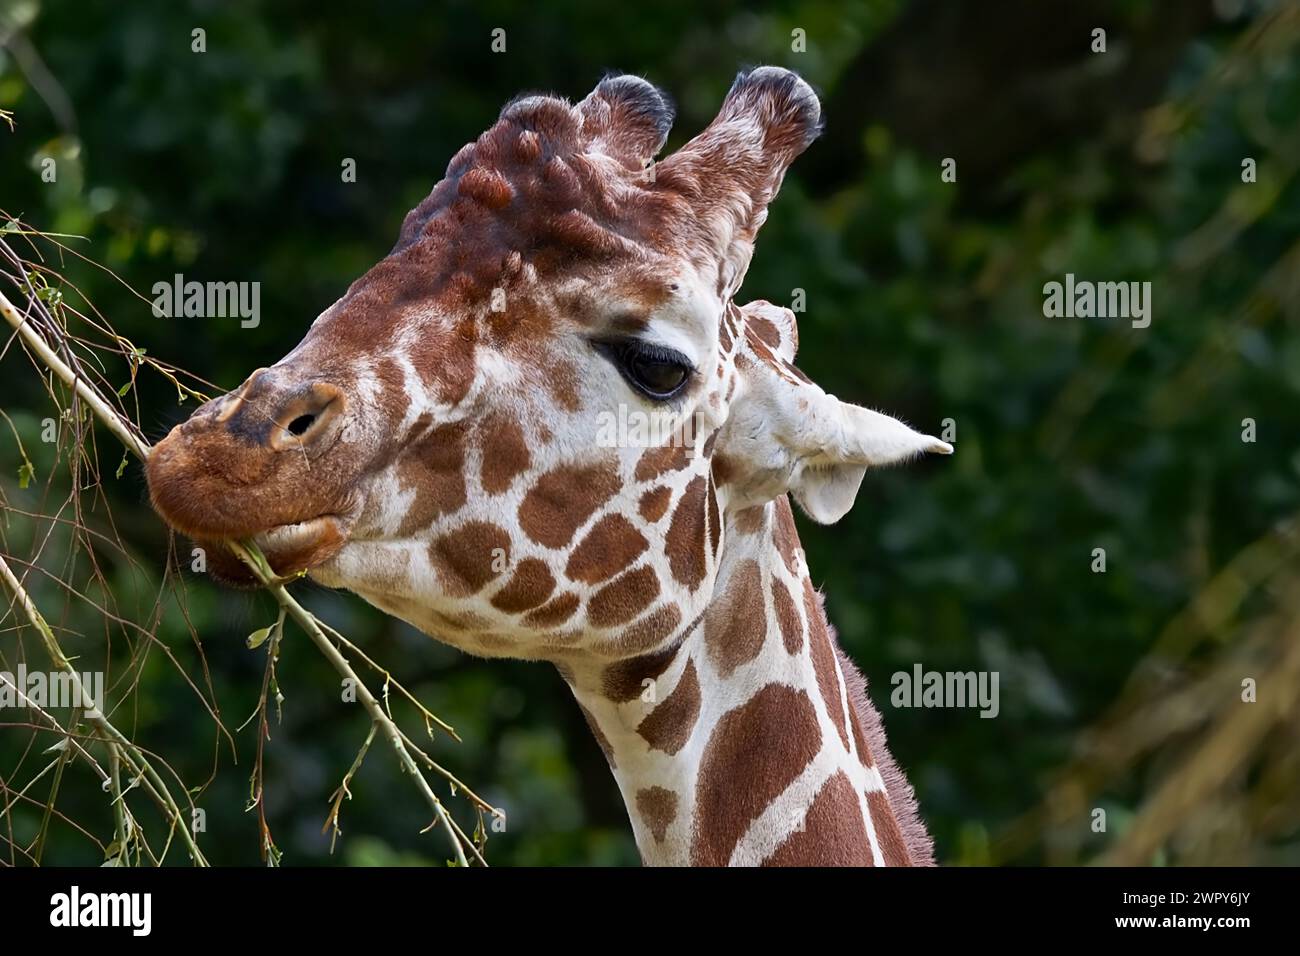 Gros plan portrait d'une girafe mangeant des feuilles d'une branche, le beau motif tacheté sur son corps clairement visible. Banque D'Images